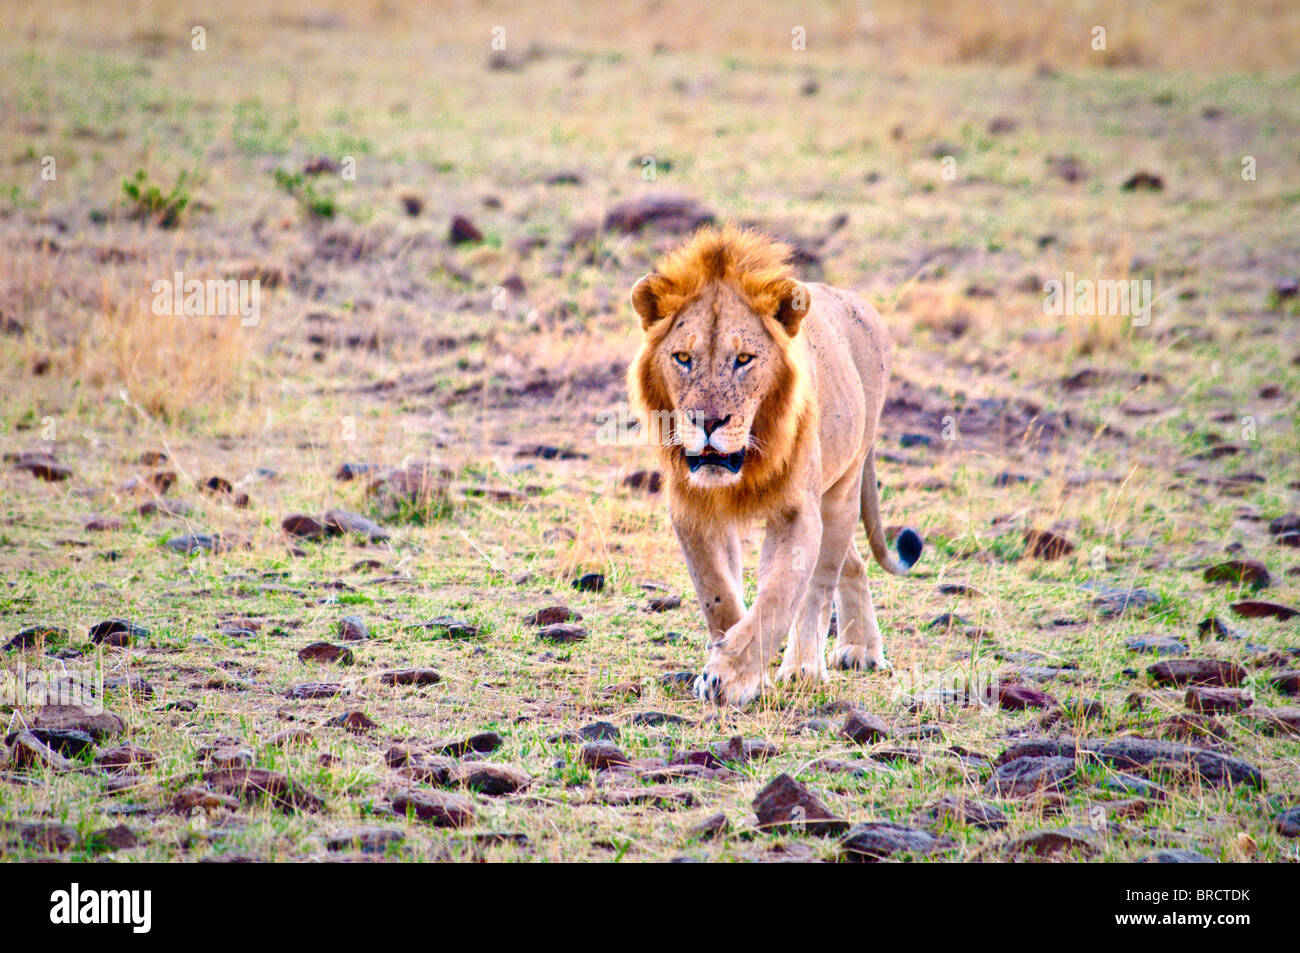 Male Lion, Panthera leo, Masai Mara National Reserve, Kenya, Africa Stock Photo